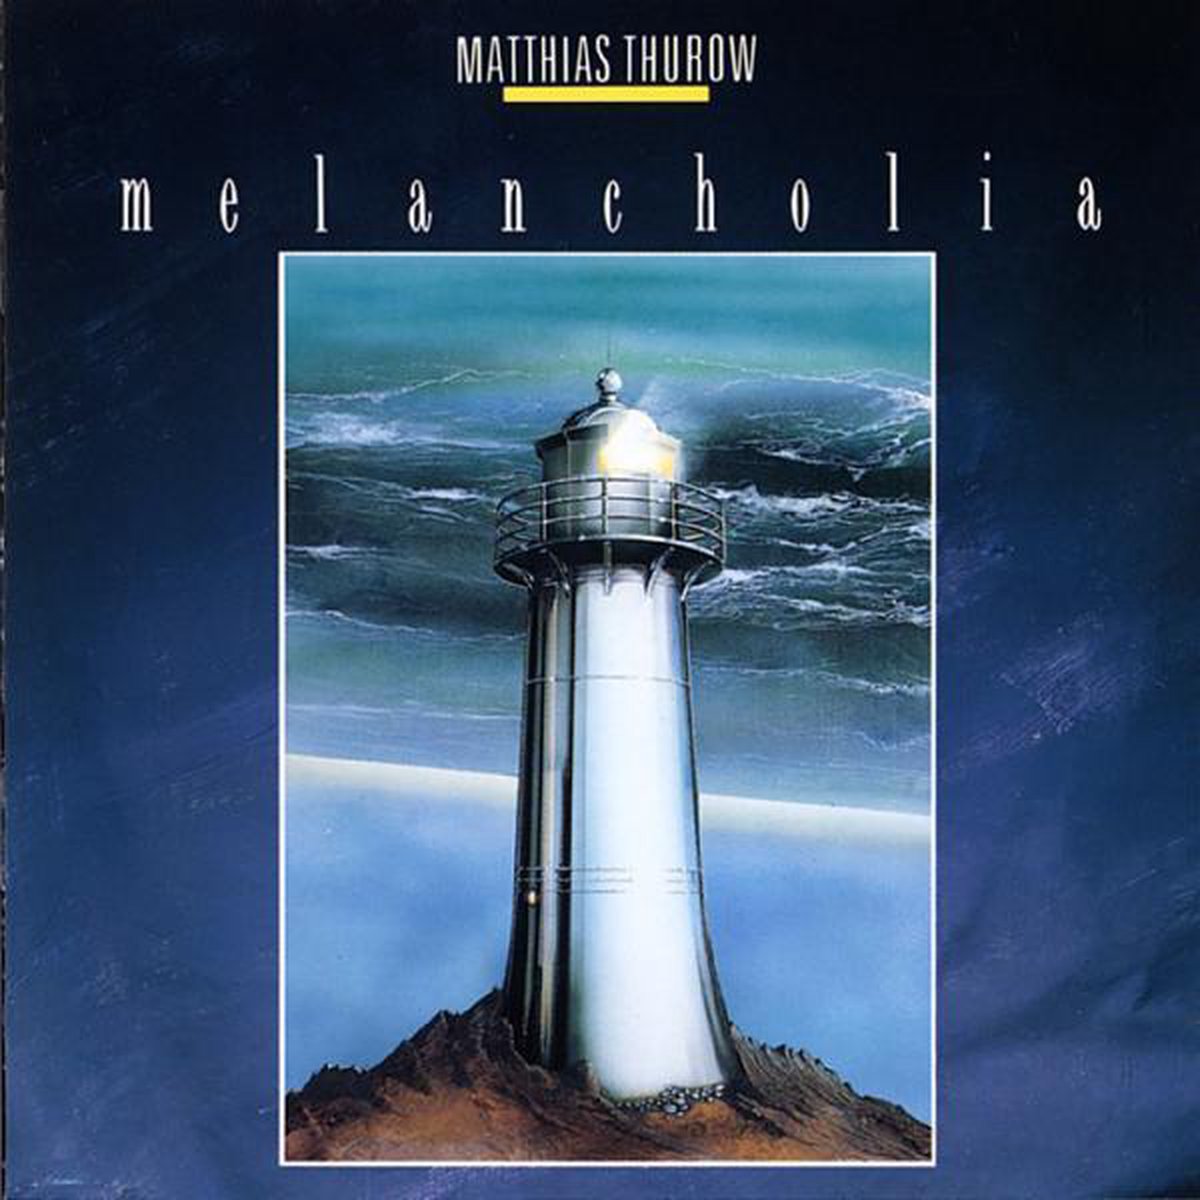 Matthias Thurow - Melancholia - 